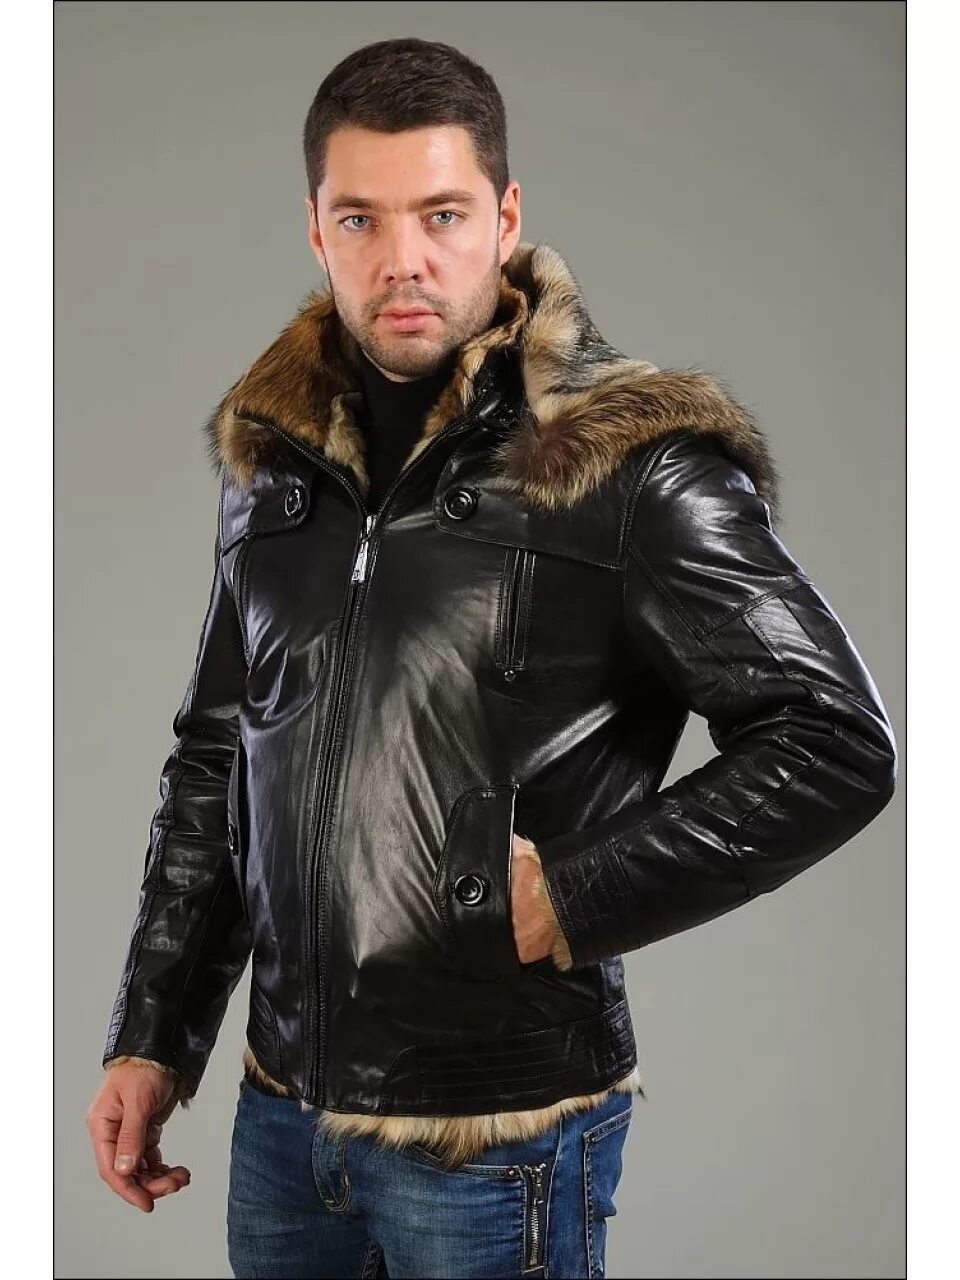 Мужские куртки зимние натуральной кожи. Турецкая зимняя кожаная мужская куртка Canmore. Falapu куртка кожаная мужская Волчий мех. Кожаная куртка с мехом мужская. Стильная мужская куртка с мехом.